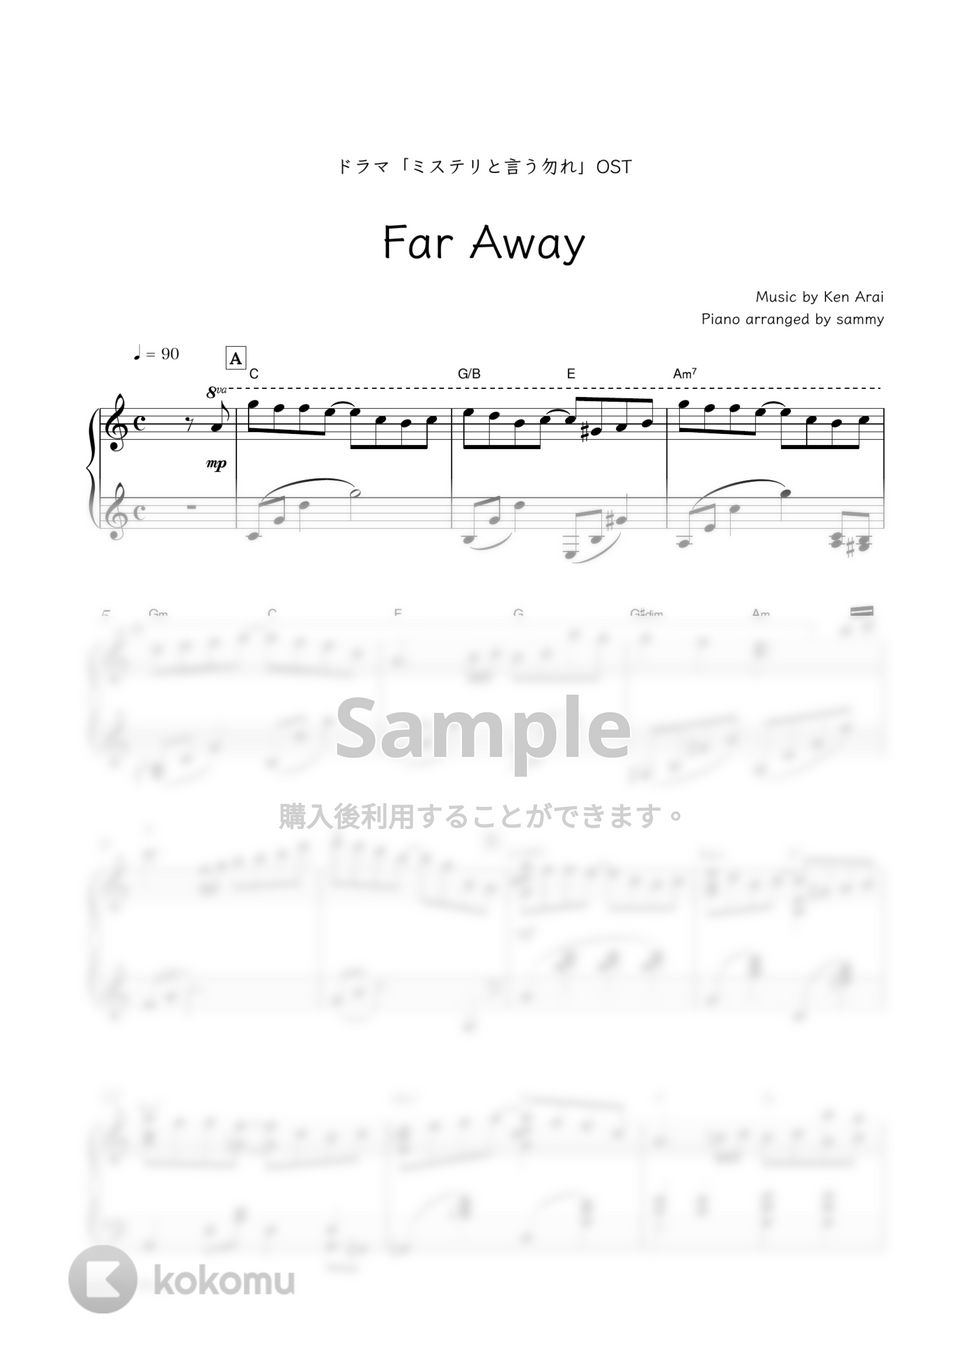 ドラマ『ミステリと言う勿れ』OST - Far Away by sammy